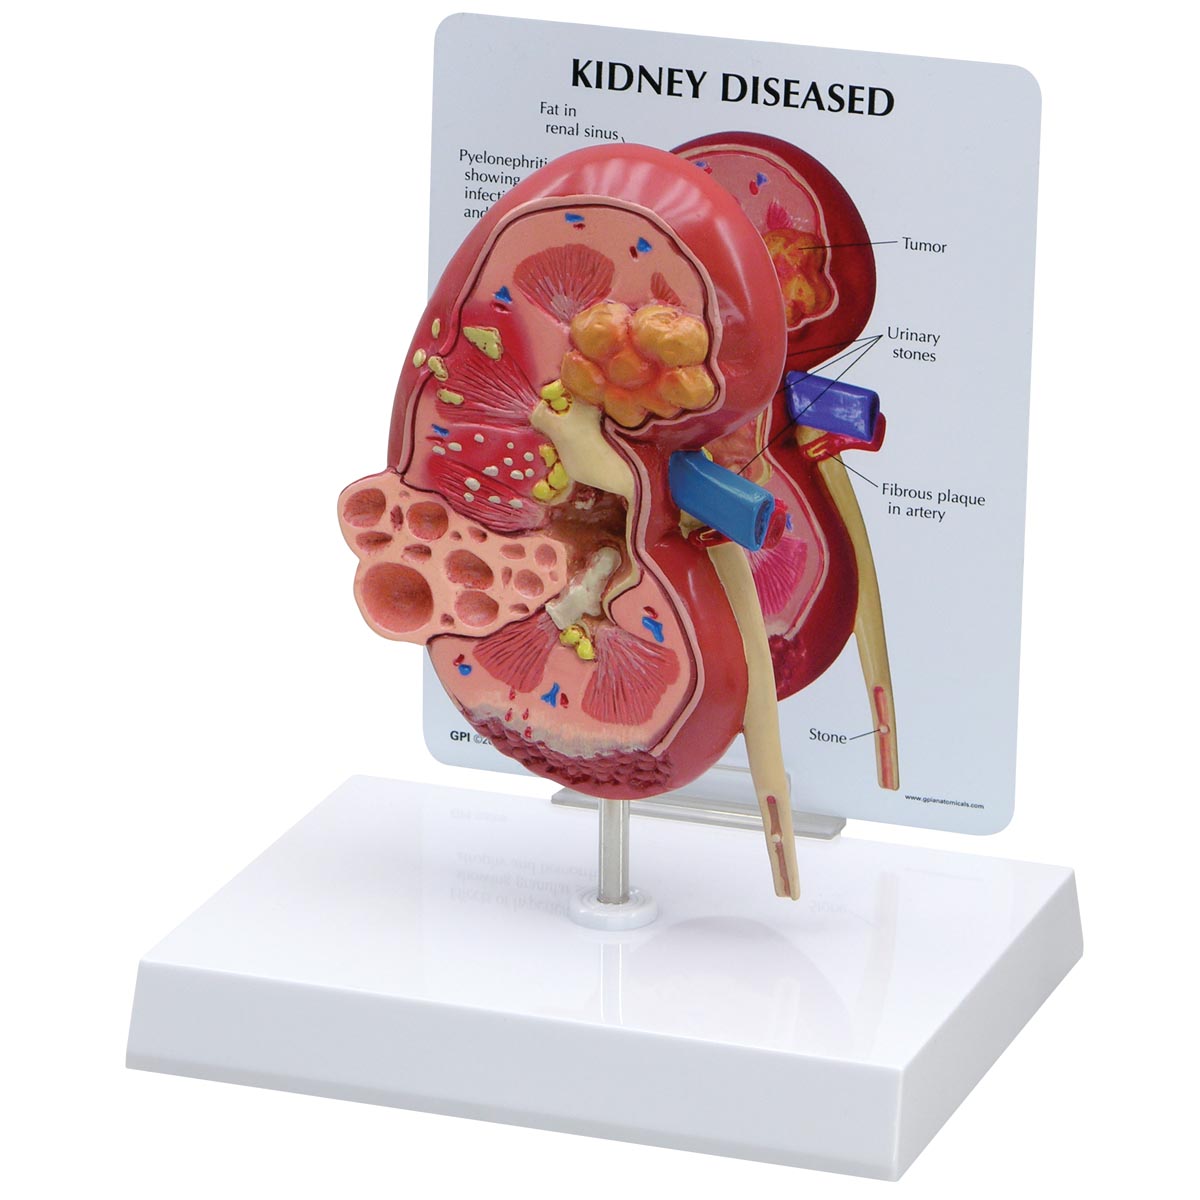 Modell einer erkrankten Niere, Bestellnummer 1019550, 3260, GPI Anatomicals